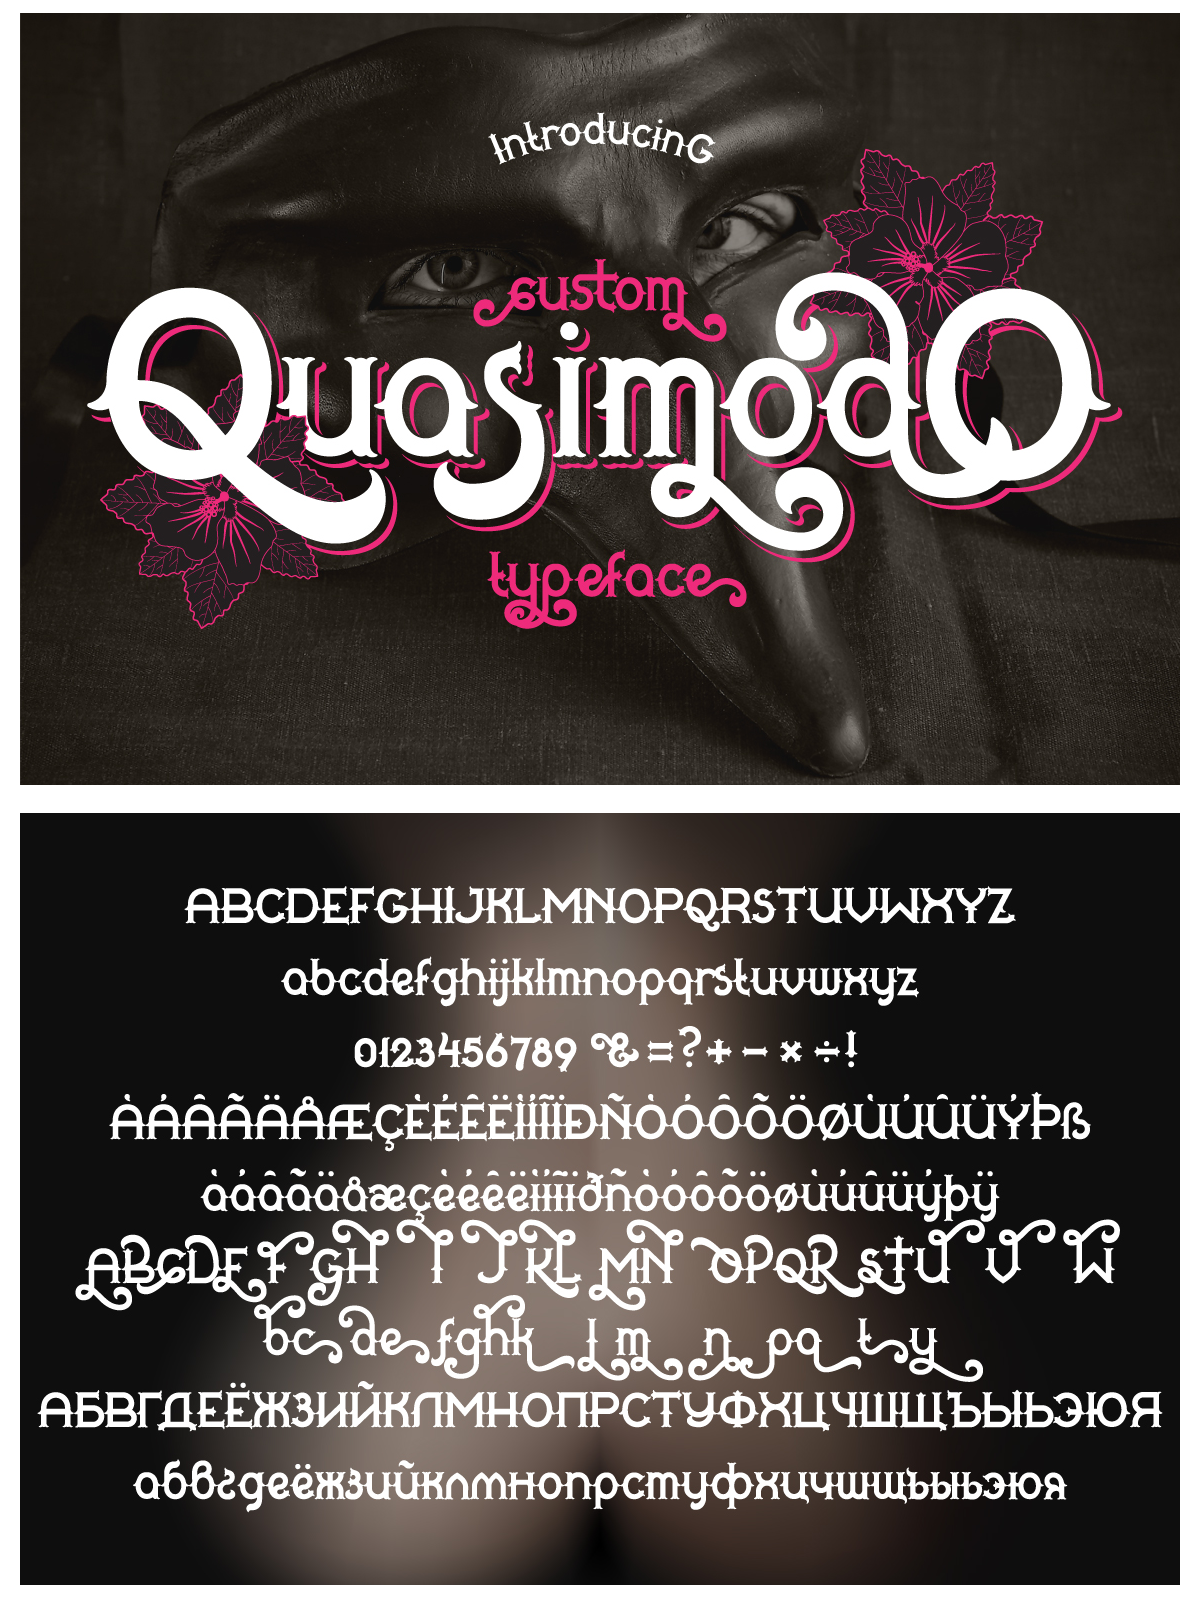 Quasimodo font pinterest image preview.